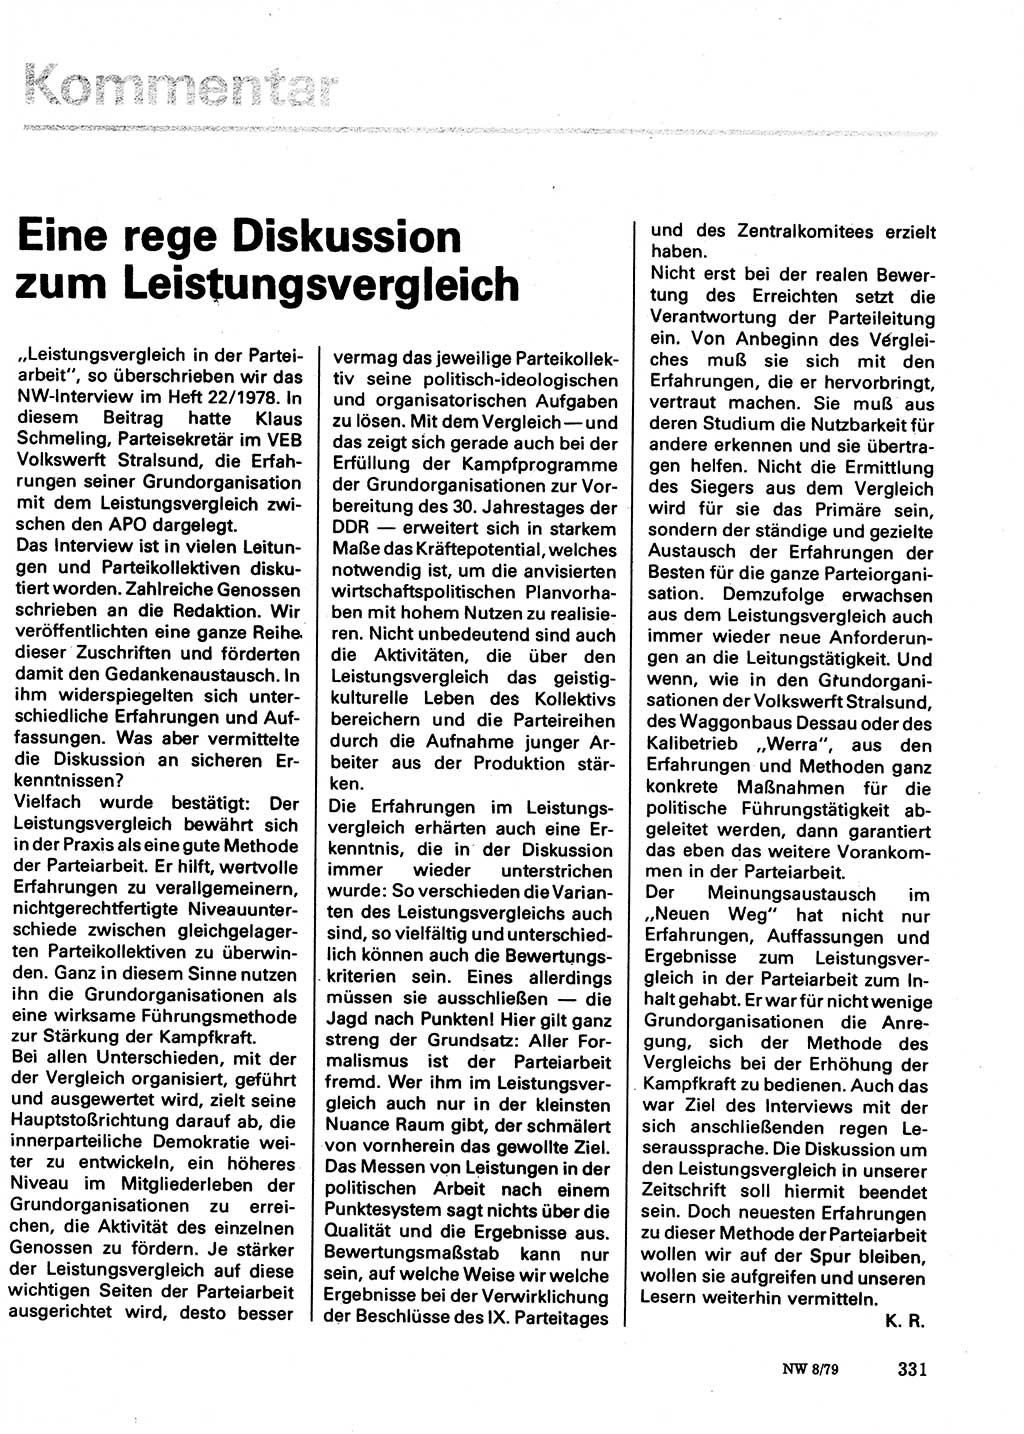 Neuer Weg (NW), Organ des Zentralkomitees (ZK) der SED (Sozialistische Einheitspartei Deutschlands) für Fragen des Parteilebens, 34. Jahrgang [Deutsche Demokratische Republik (DDR)] 1979, Seite 331 (NW ZK SED DDR 1979, S. 331)